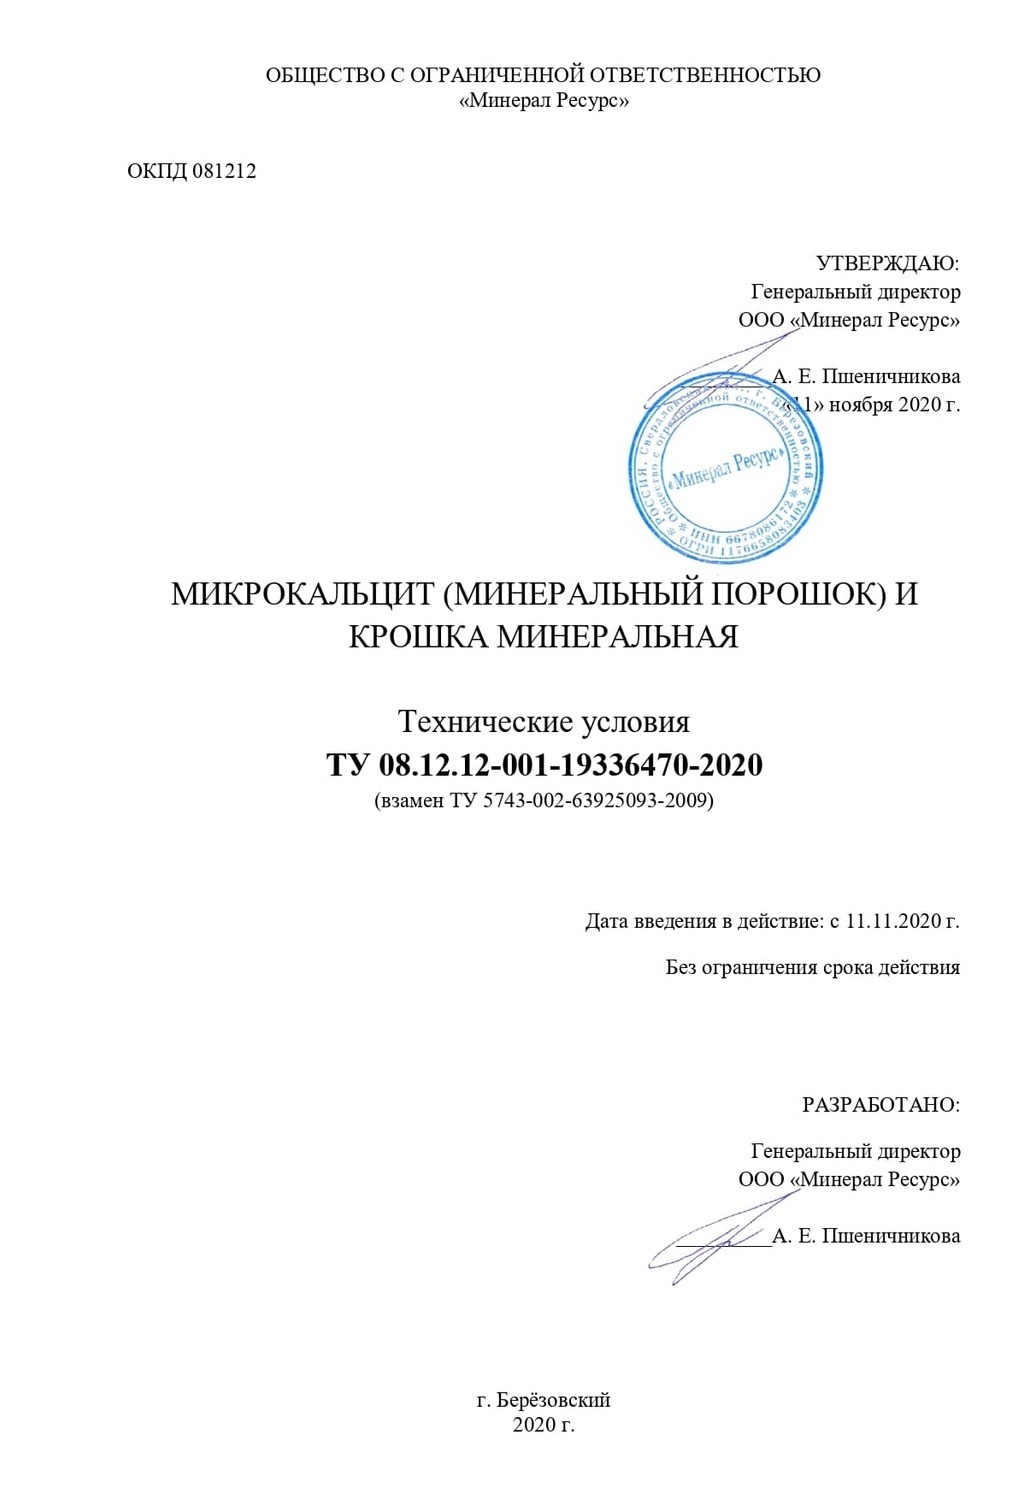 Технические условия на изготовление мраморной крошки ТУ 08.12.12-001-19336470-2020 (титульный лист)